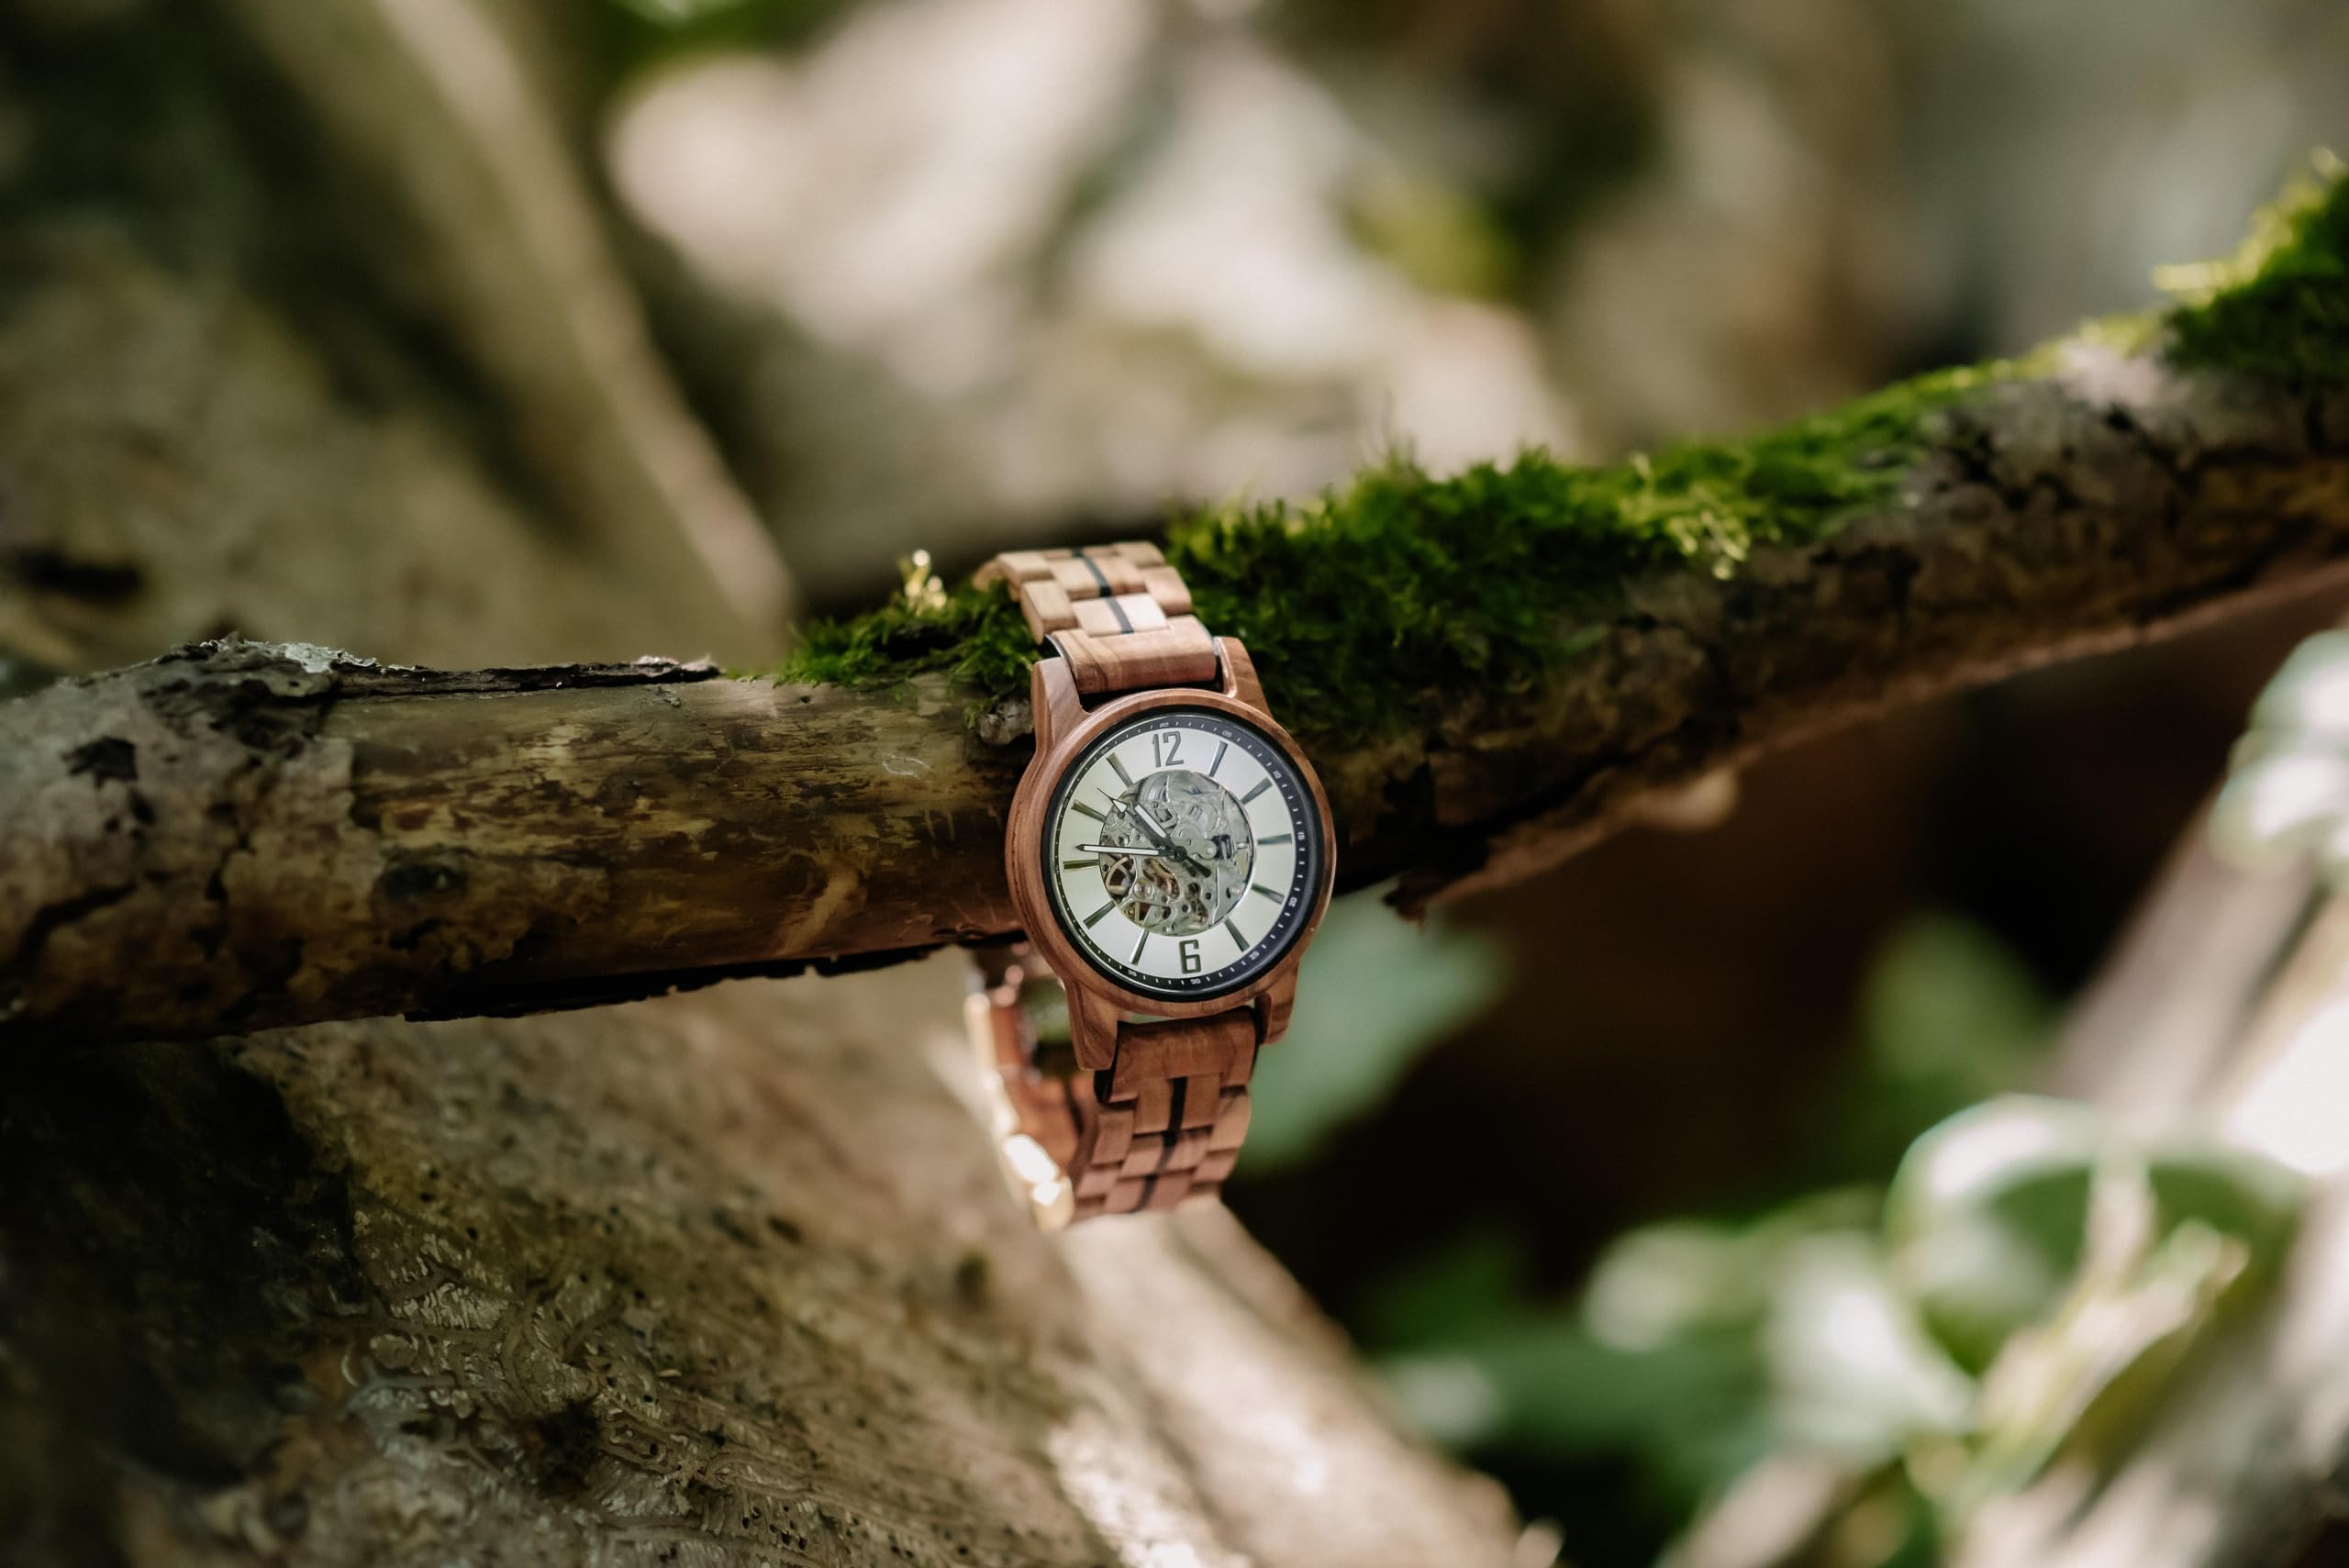 WATCHTHIS Helsinki Luxus Herrenuhr - Handgefertigte mechanische Automatik Armbanduhr aus Echtholz & Edelstahl, Präzises Uhrwerk, Nachhaltig, Uhr inkl. Box